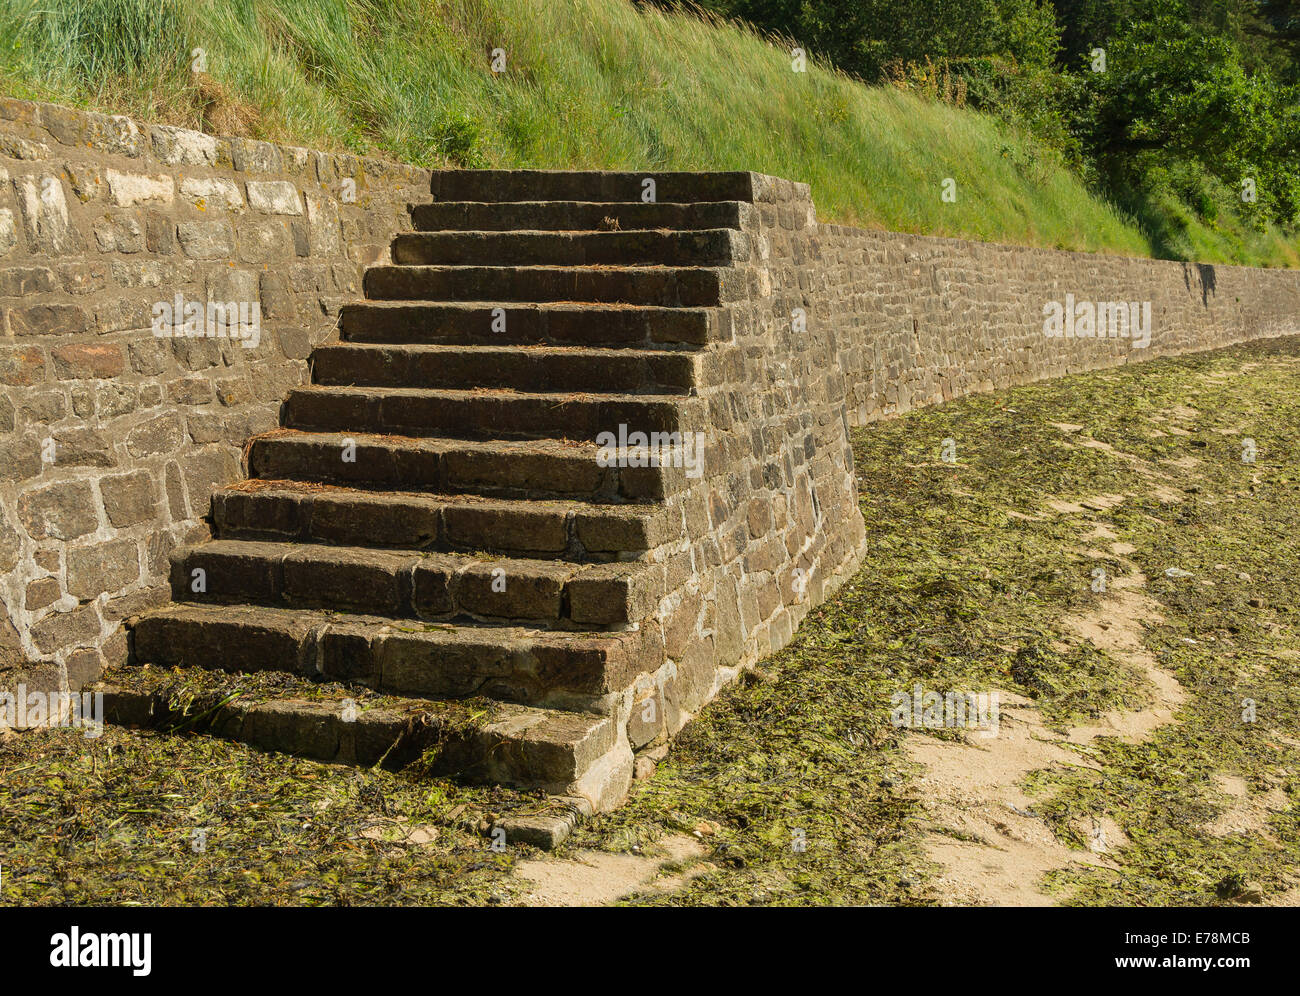 Escalier de pierre de la plage, l'île aux Moines, Morbihan, France. Banque D'Images